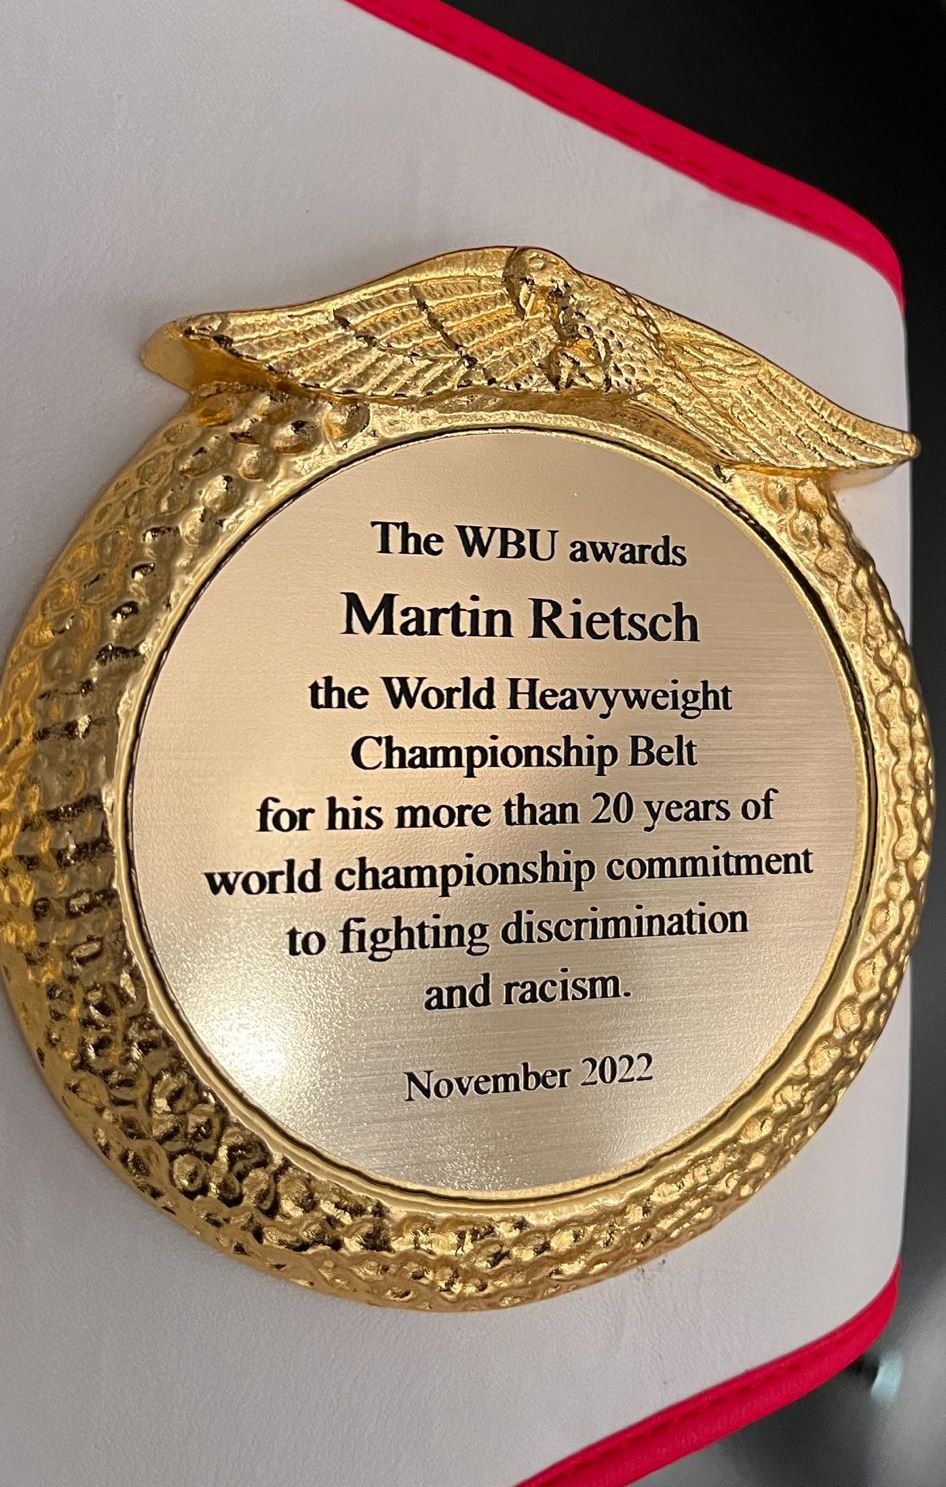 Engagement verdient Anerkennung: Martin Rietsch erhält den Weltmeistergürtel im Schwergewicht für sein Engagement gegen Rassismus